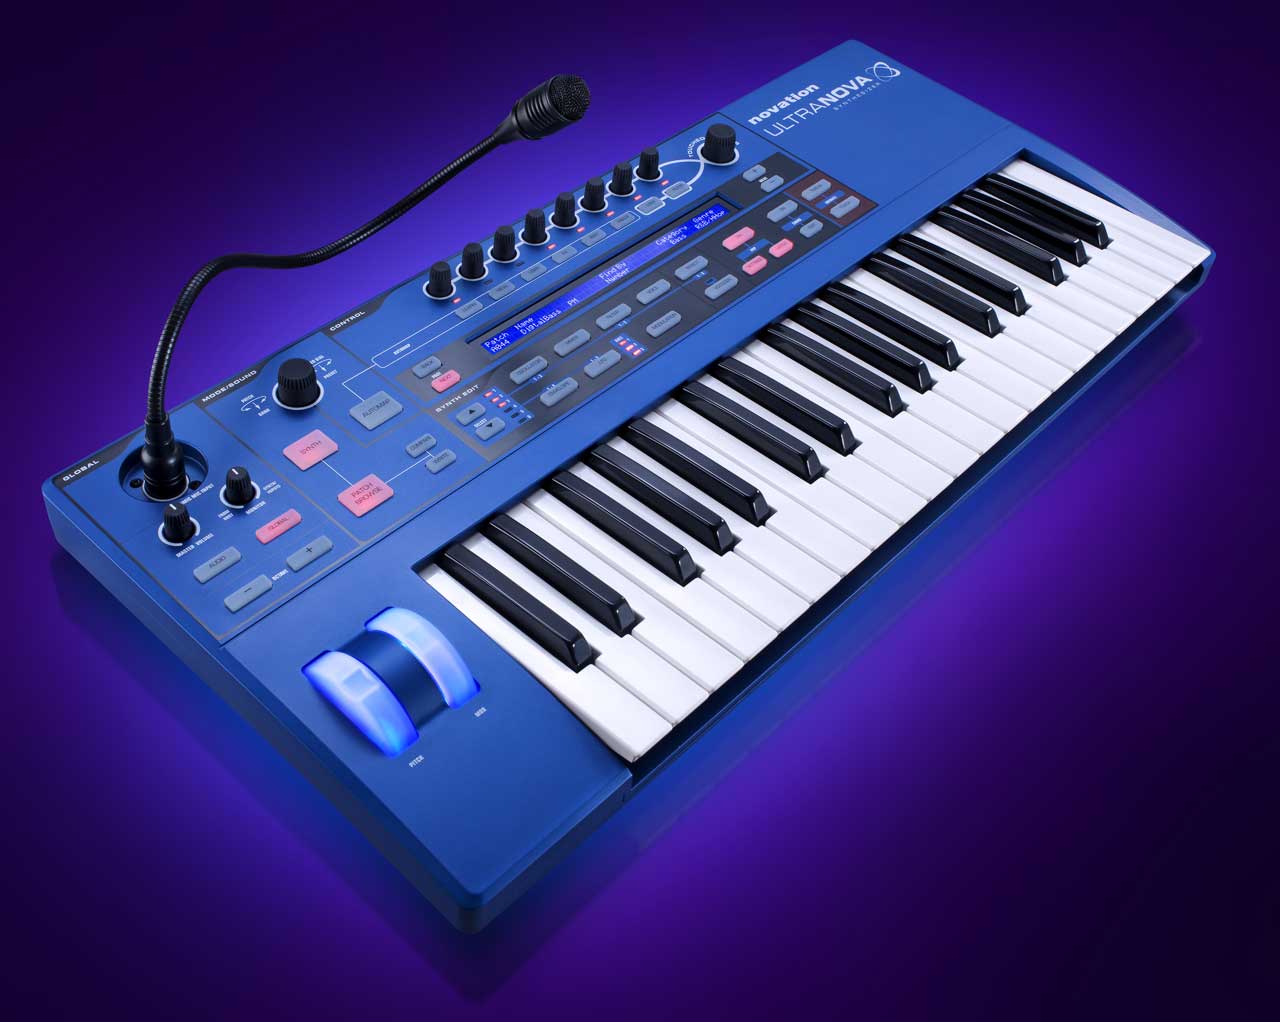 Novation Ultra Nova synthesizer